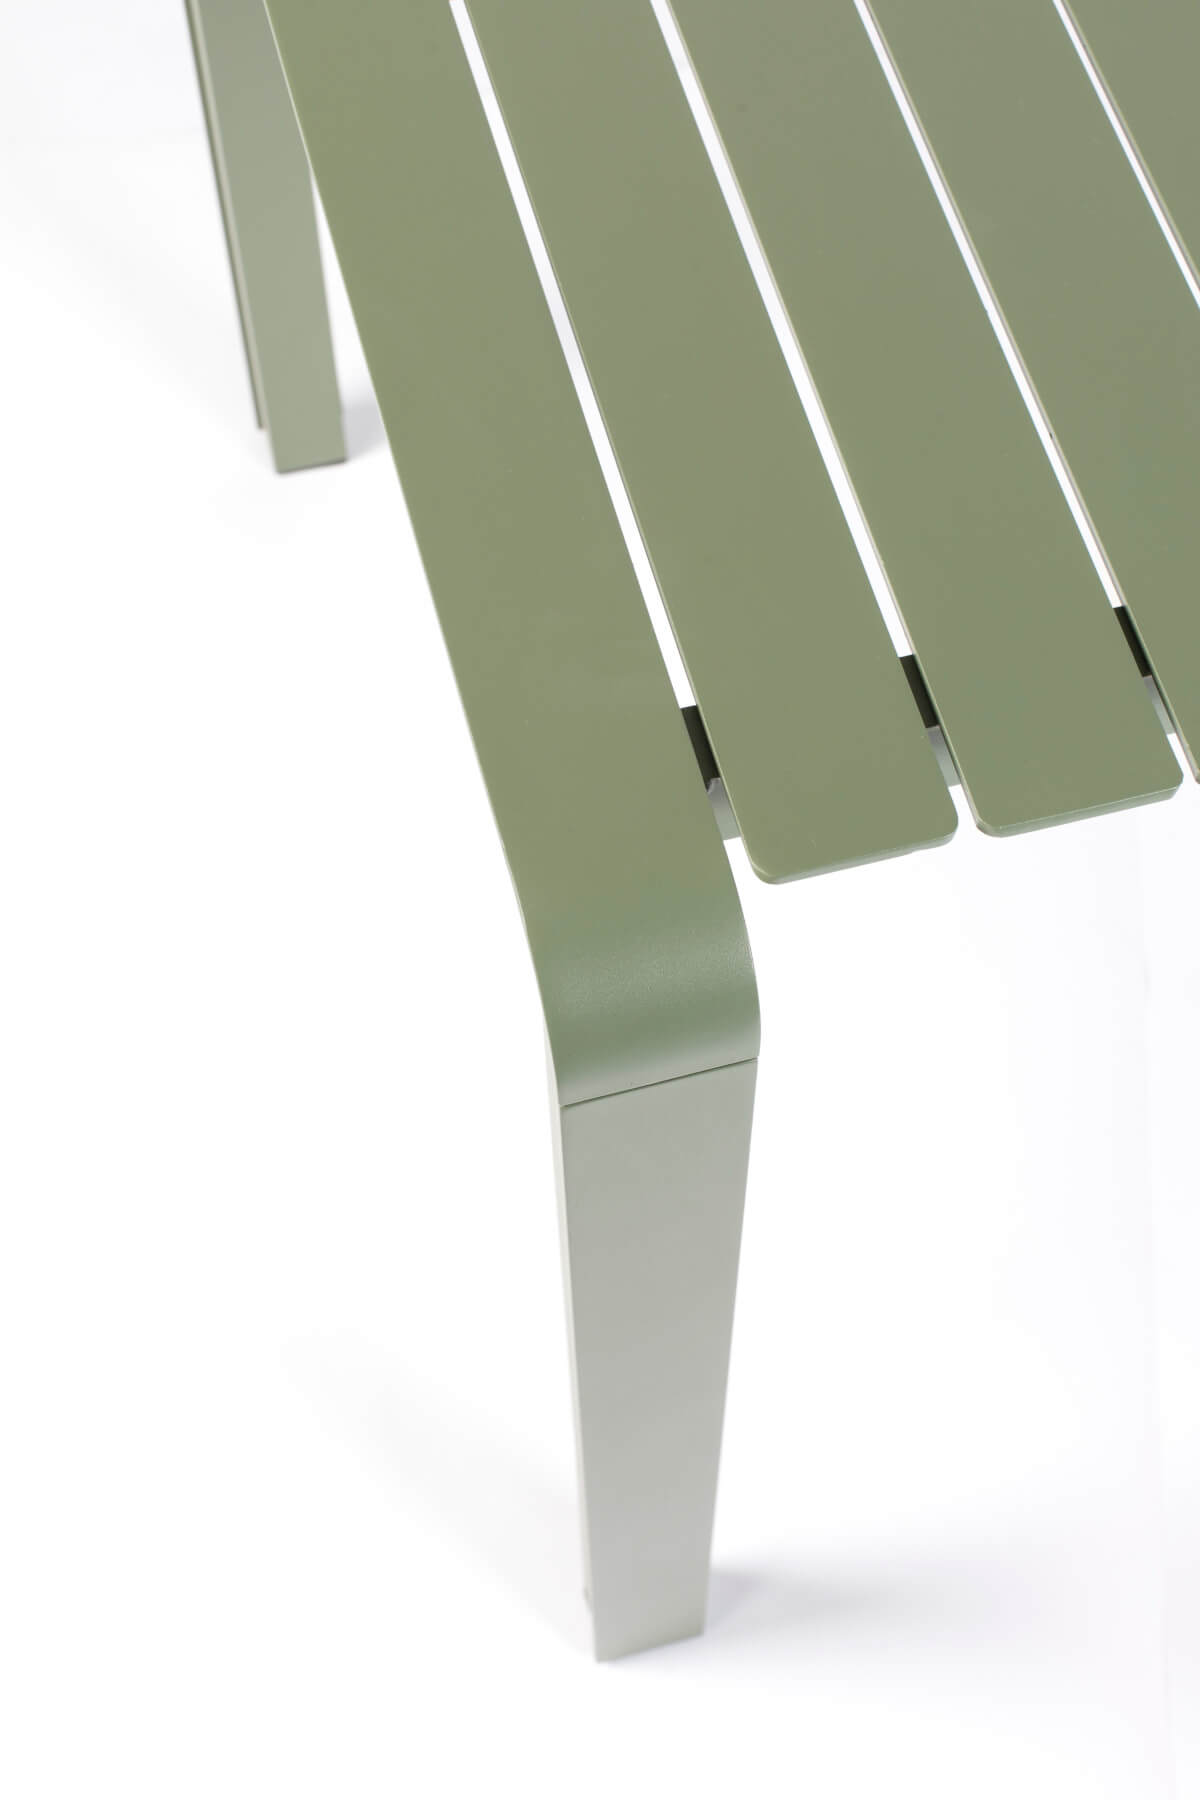 Vondel Tisch, 214 x 97 cm, grün